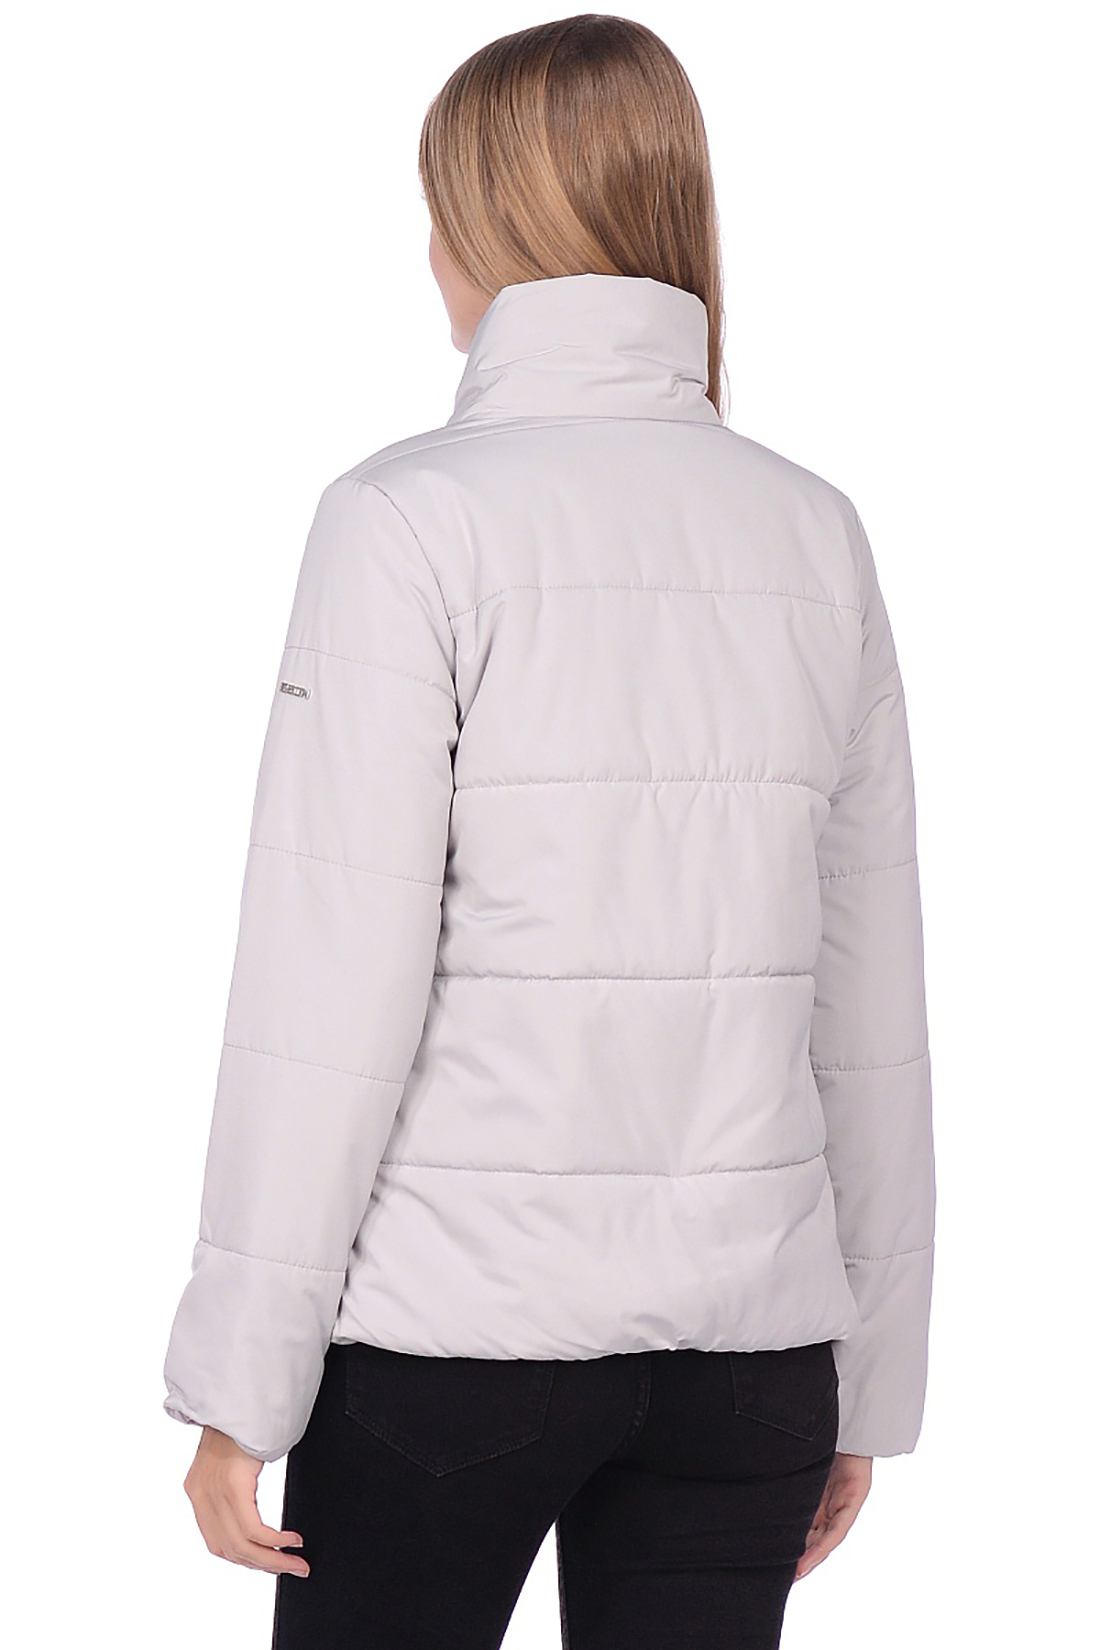 Короткая куртка с асимметричной застёжкой (арт. baon B039506), размер S, цвет серый Короткая куртка с асимметричной застёжкой (арт. baon B039506) - фото 2